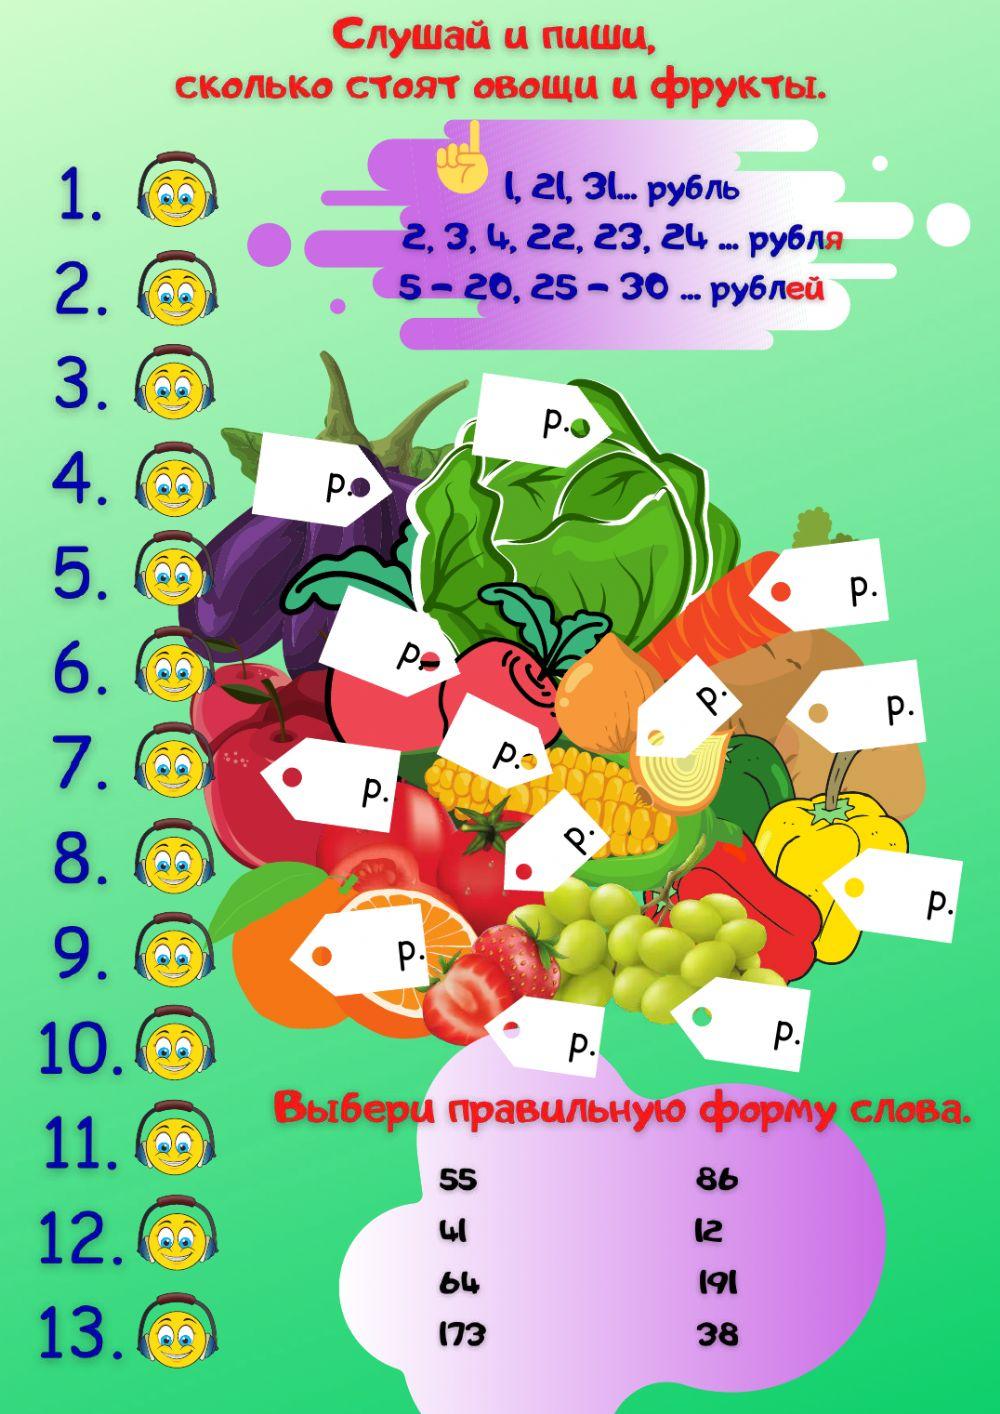 Сколько стоят овощи и фрукты?